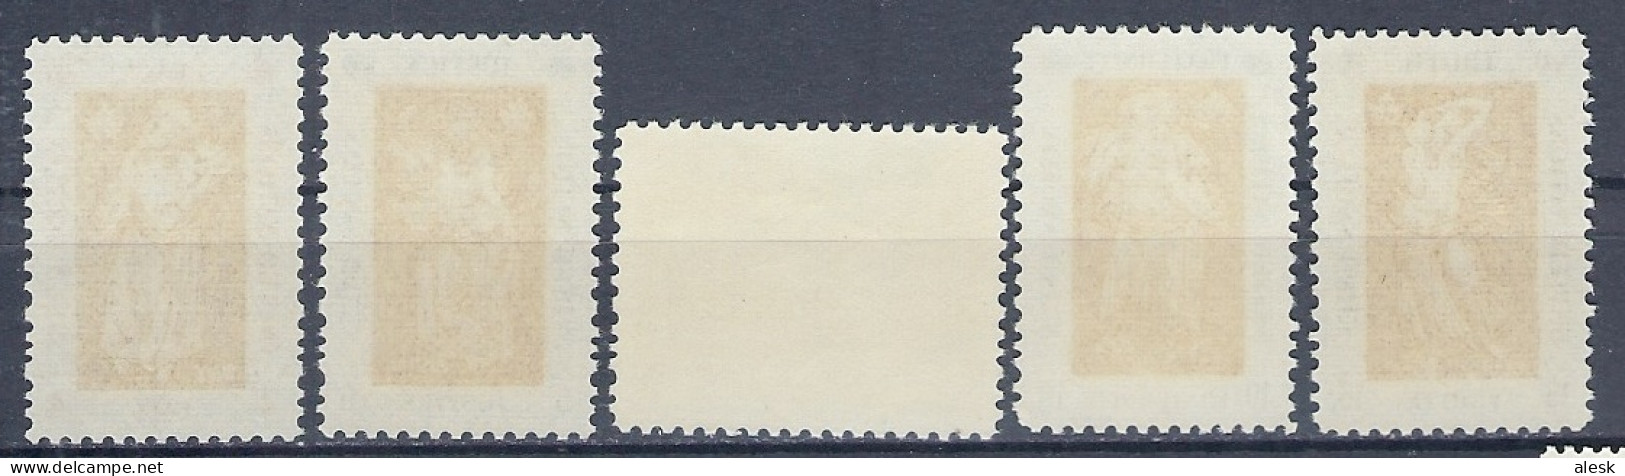 NATIONS-UNIES New-York 1967 - Série N°165 à 169 (y&t) - Exposition Montréal - Paix - Justice - Fraternité - Vérité - Unused Stamps